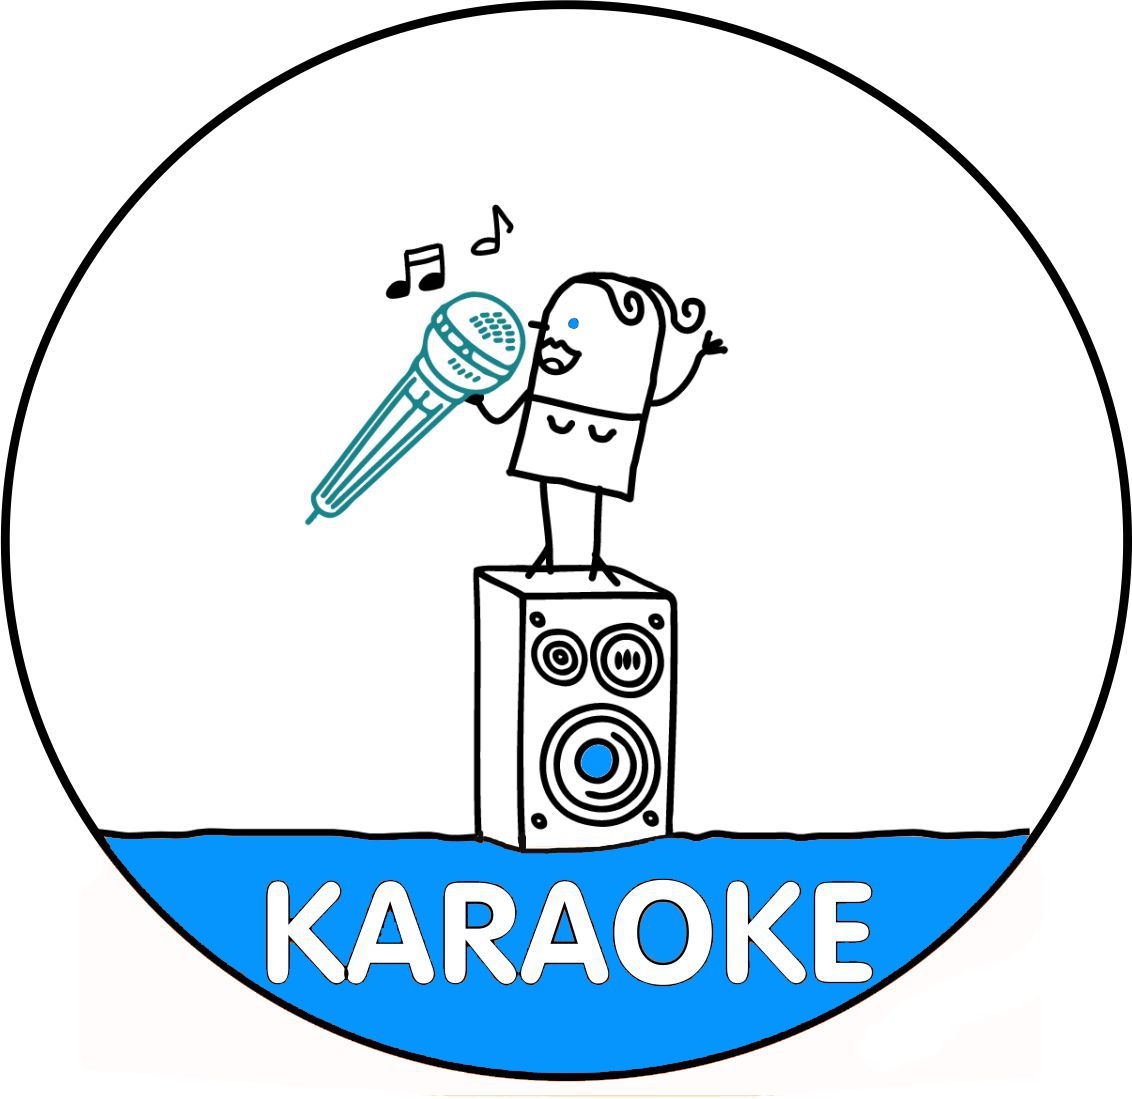 Karaoké : les meilleures chansons pour mettre l'ambiance